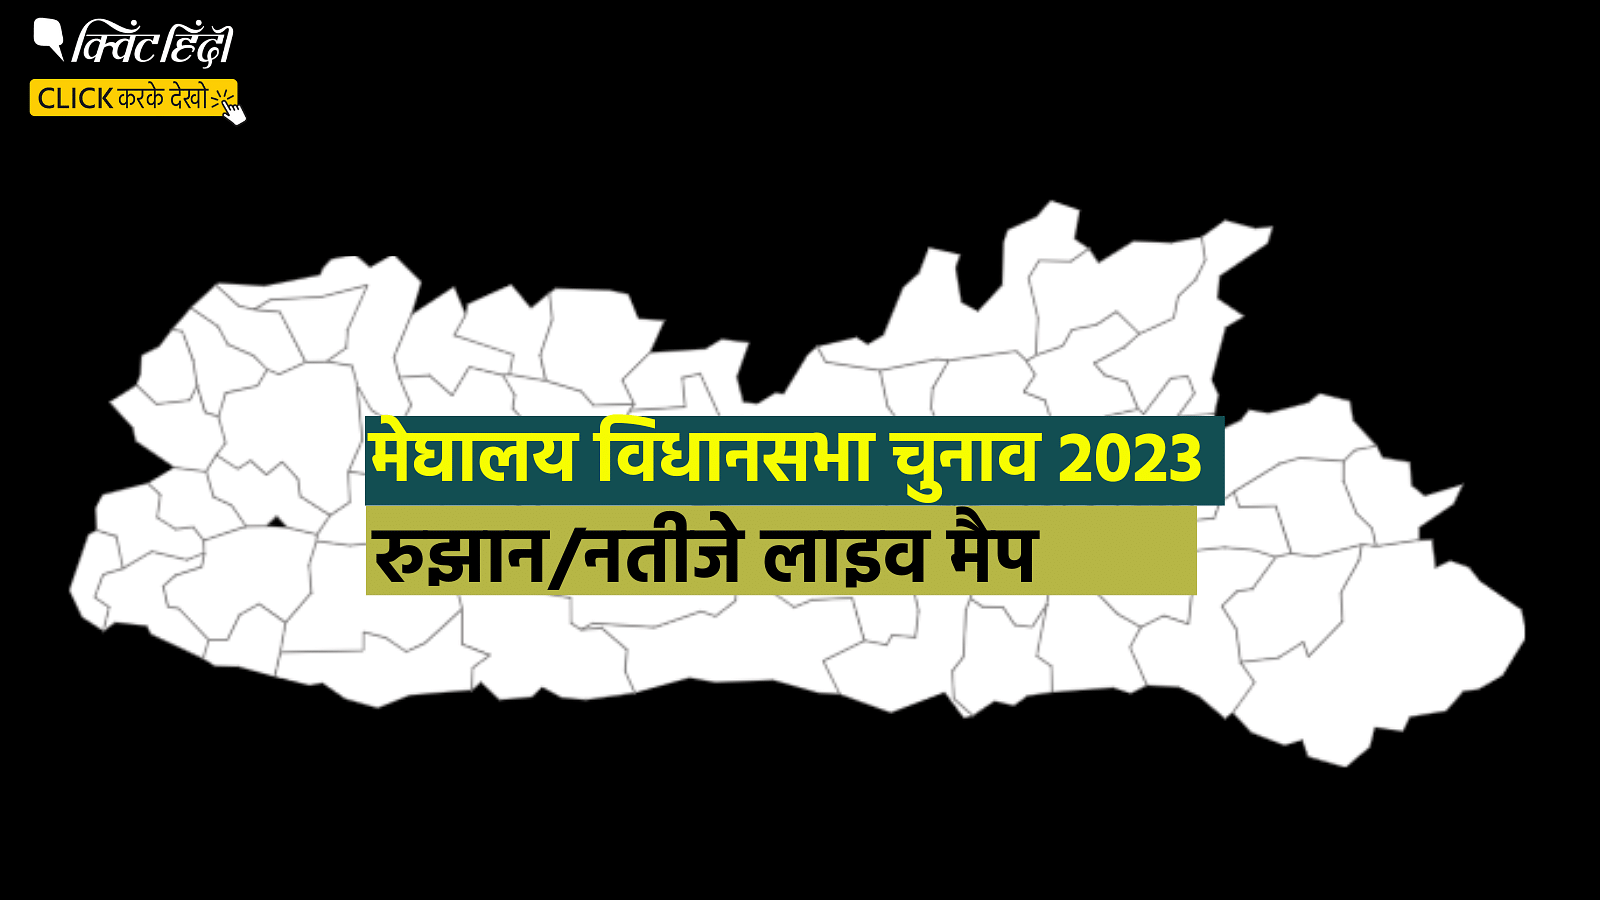 <div class="paragraphs"><p>Meghalaya Election Results 2023: मेघालय की हर सीट का लाइव हाल बता रहा ये मैप</p></div>